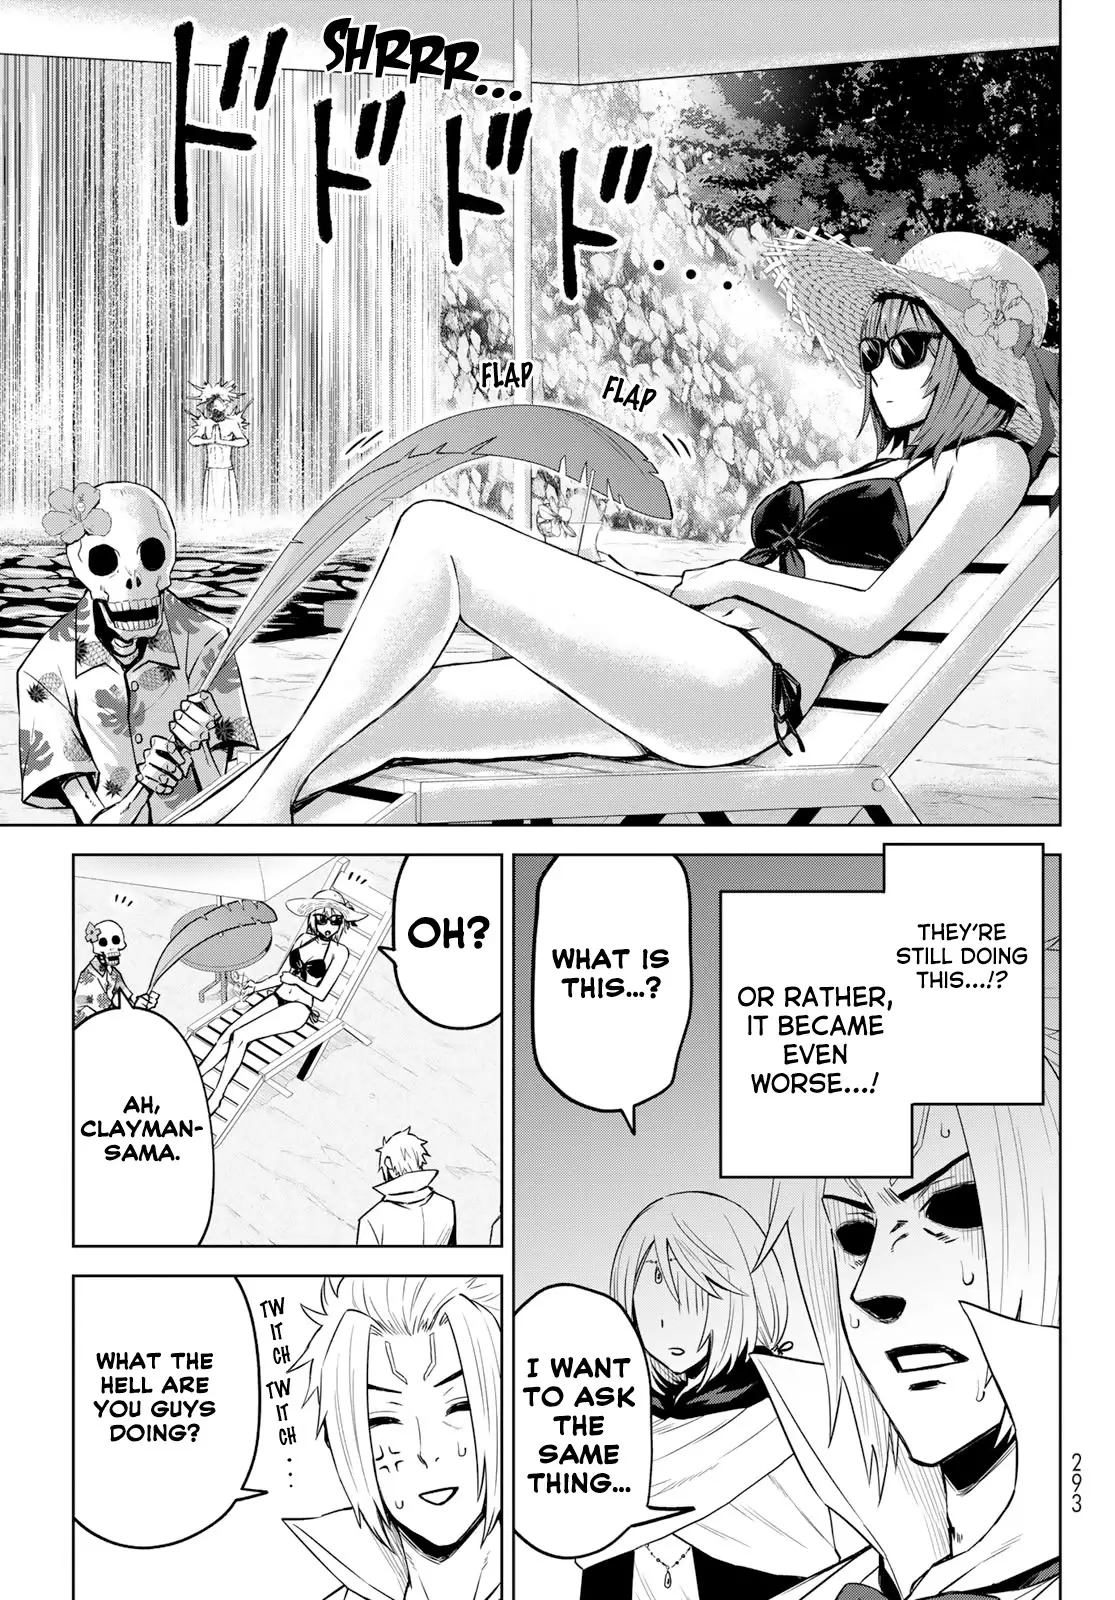 Tensei Shitara Slime Datta Ken: Clayman Revenge - 9 page 21-4a995659